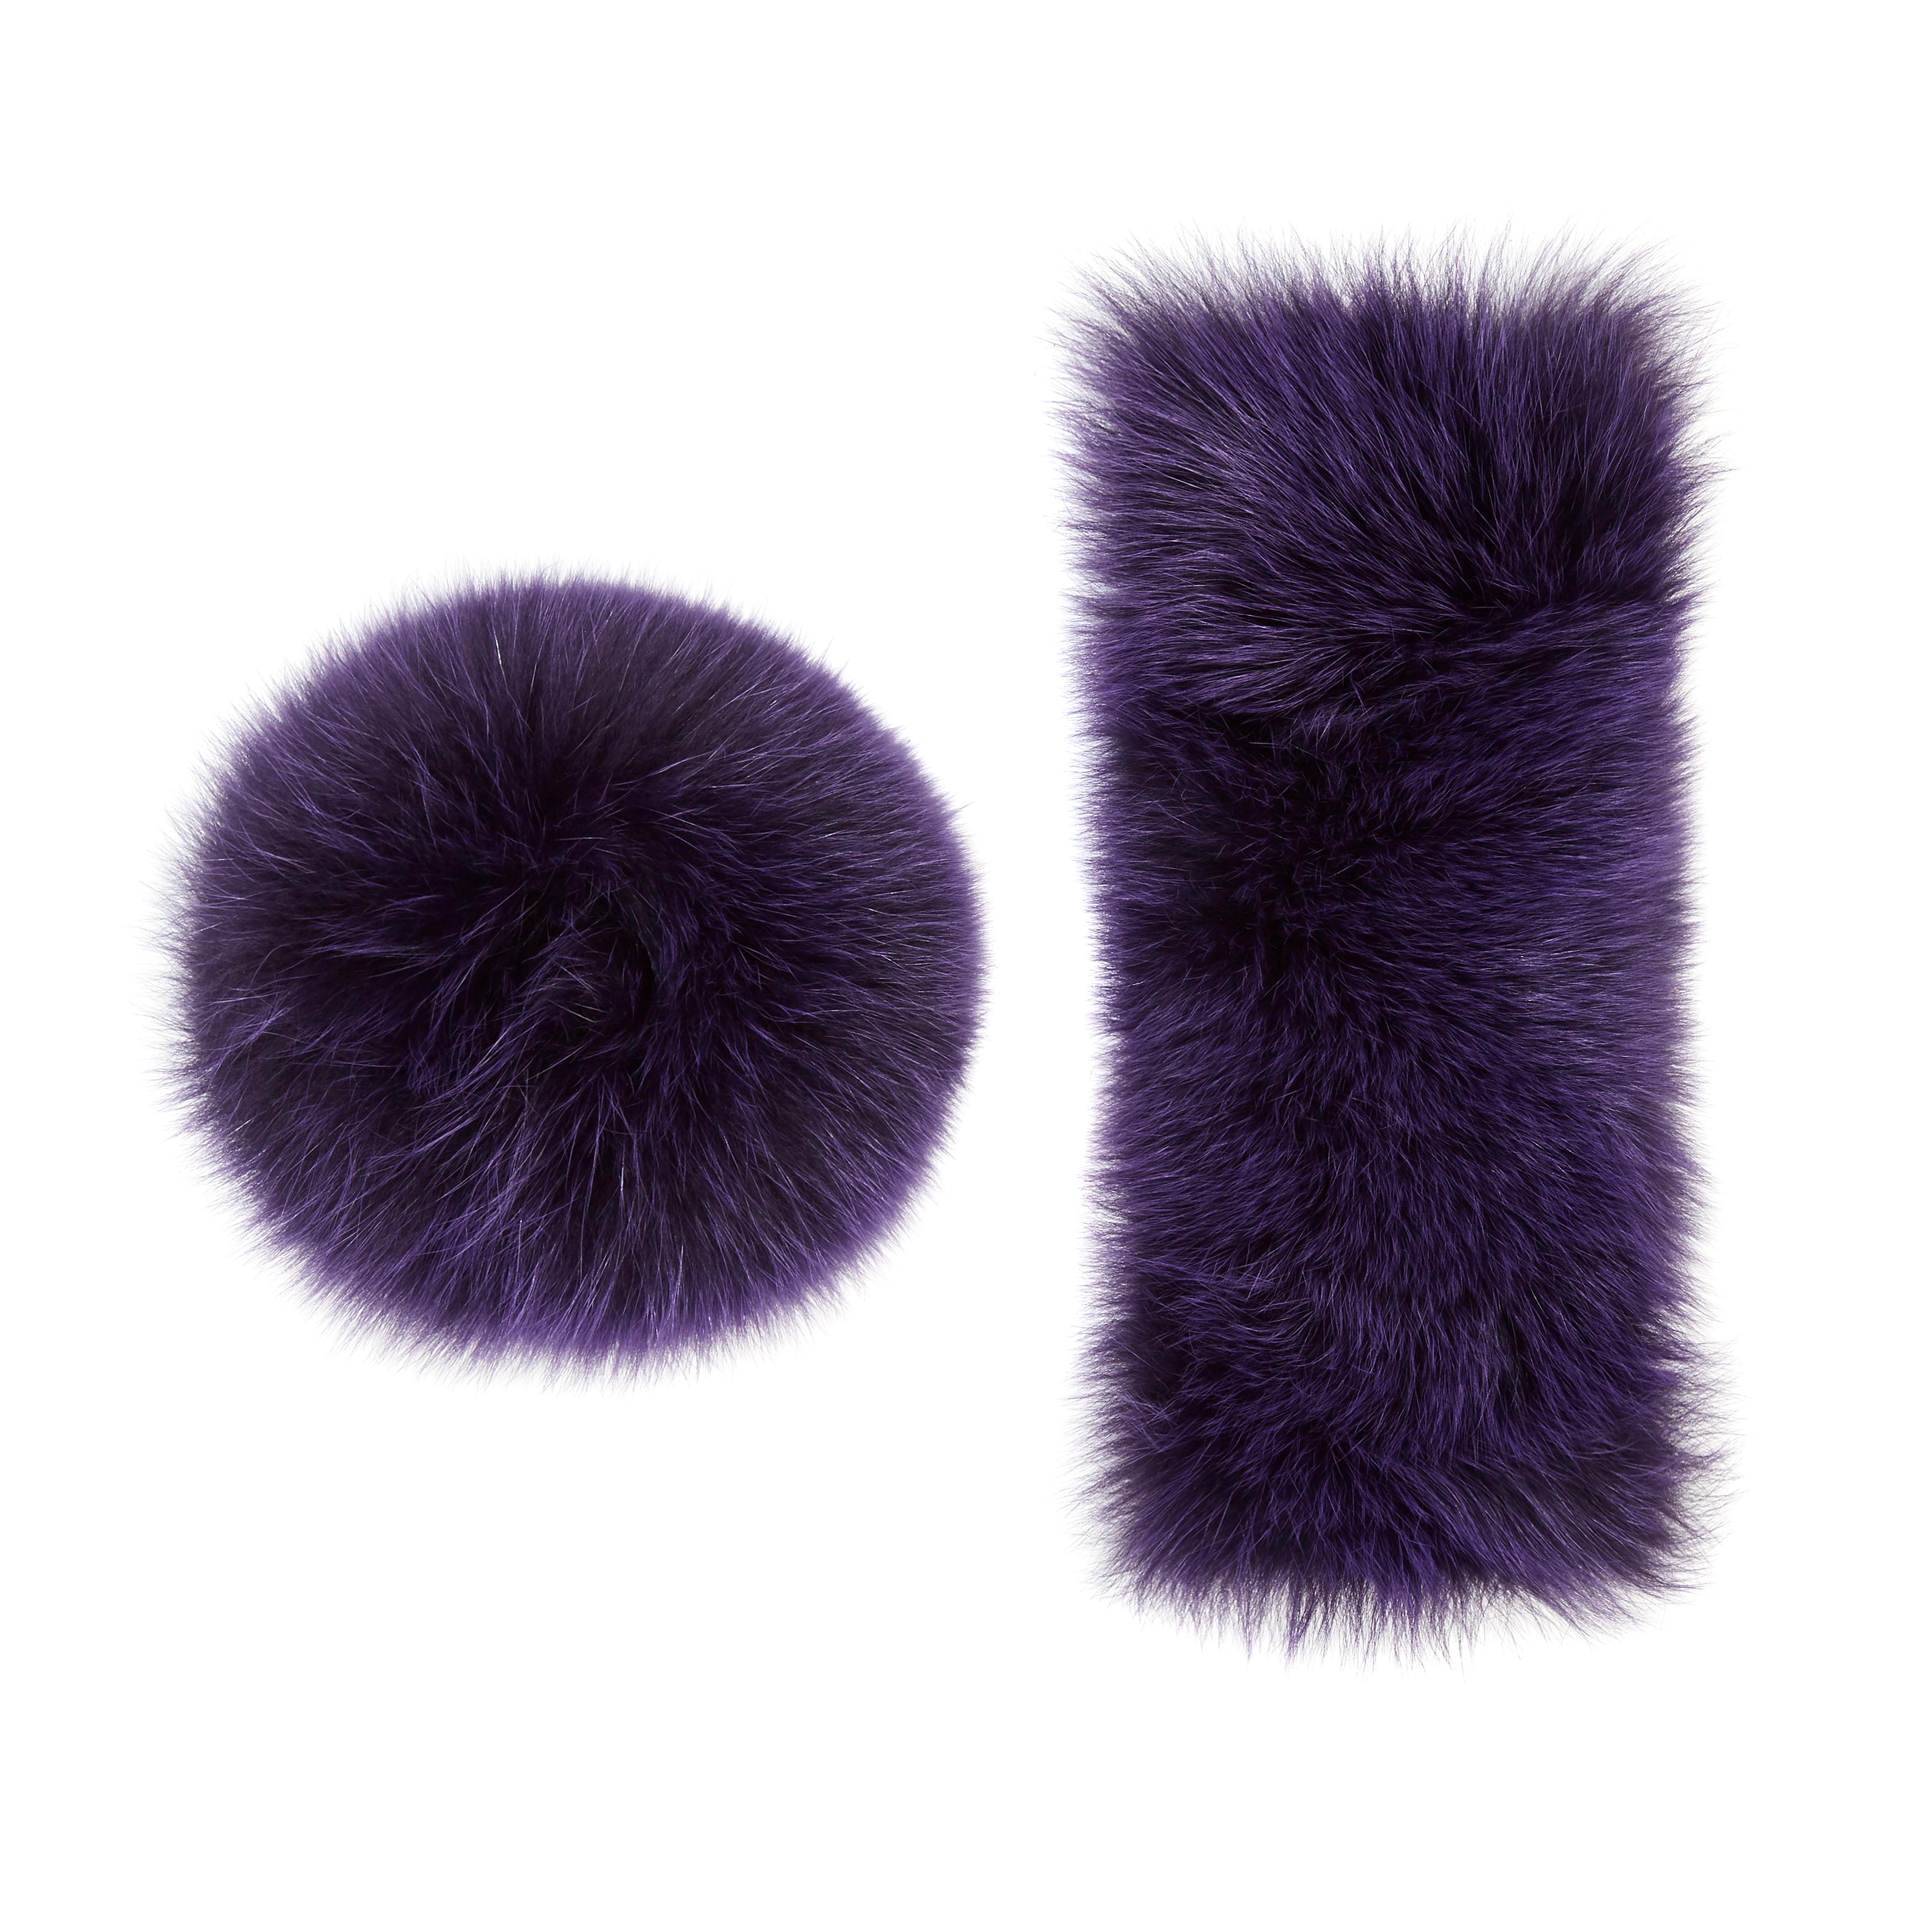 Verheyen London Snap on Fox Fur Cuffs in Purple Amethyst